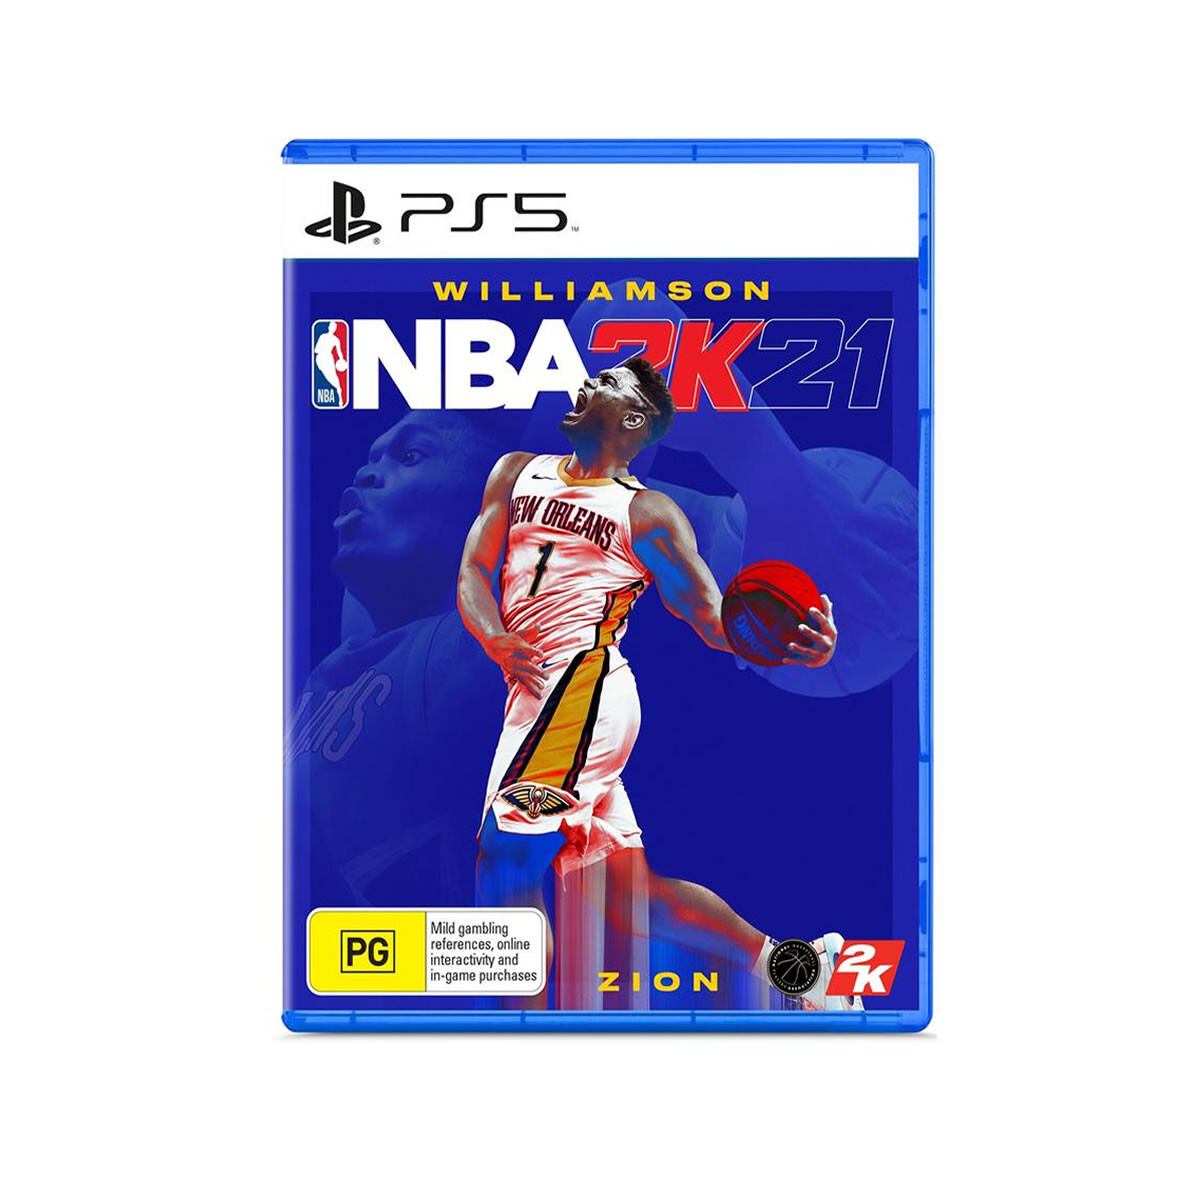 PS5 NBA 2K21 